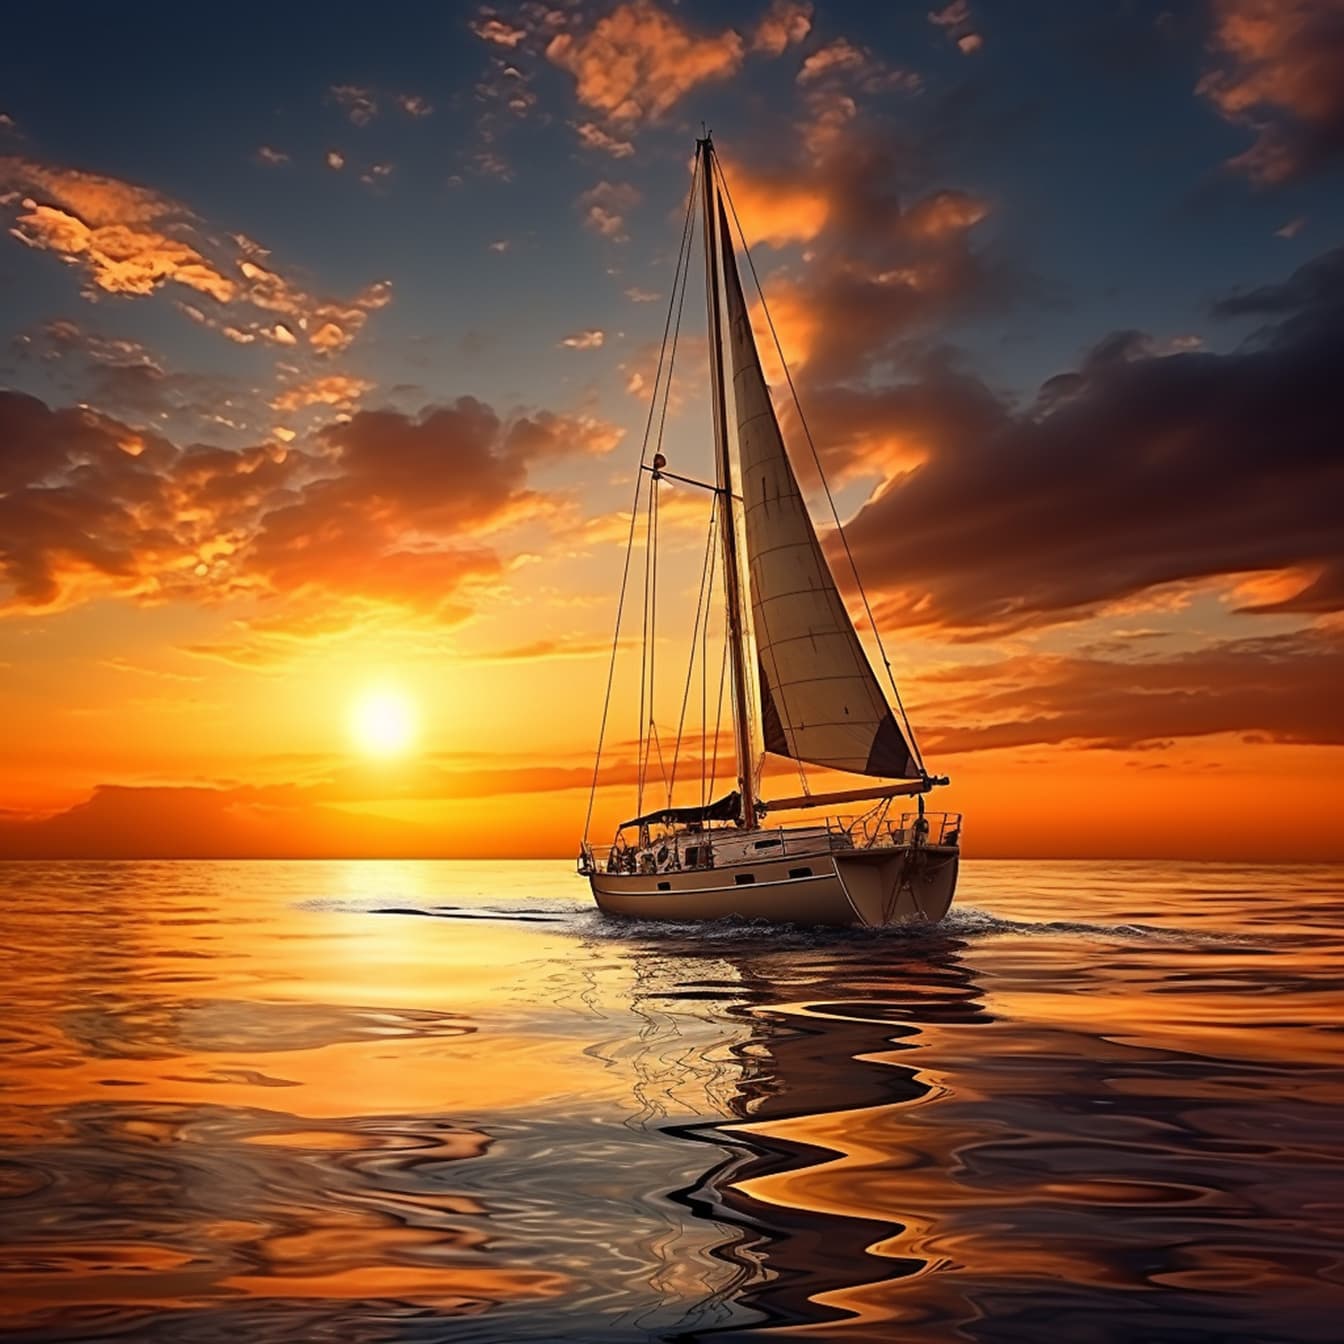 Đồ họa thuyền buồm trên biển yên tĩnh khi bình minh